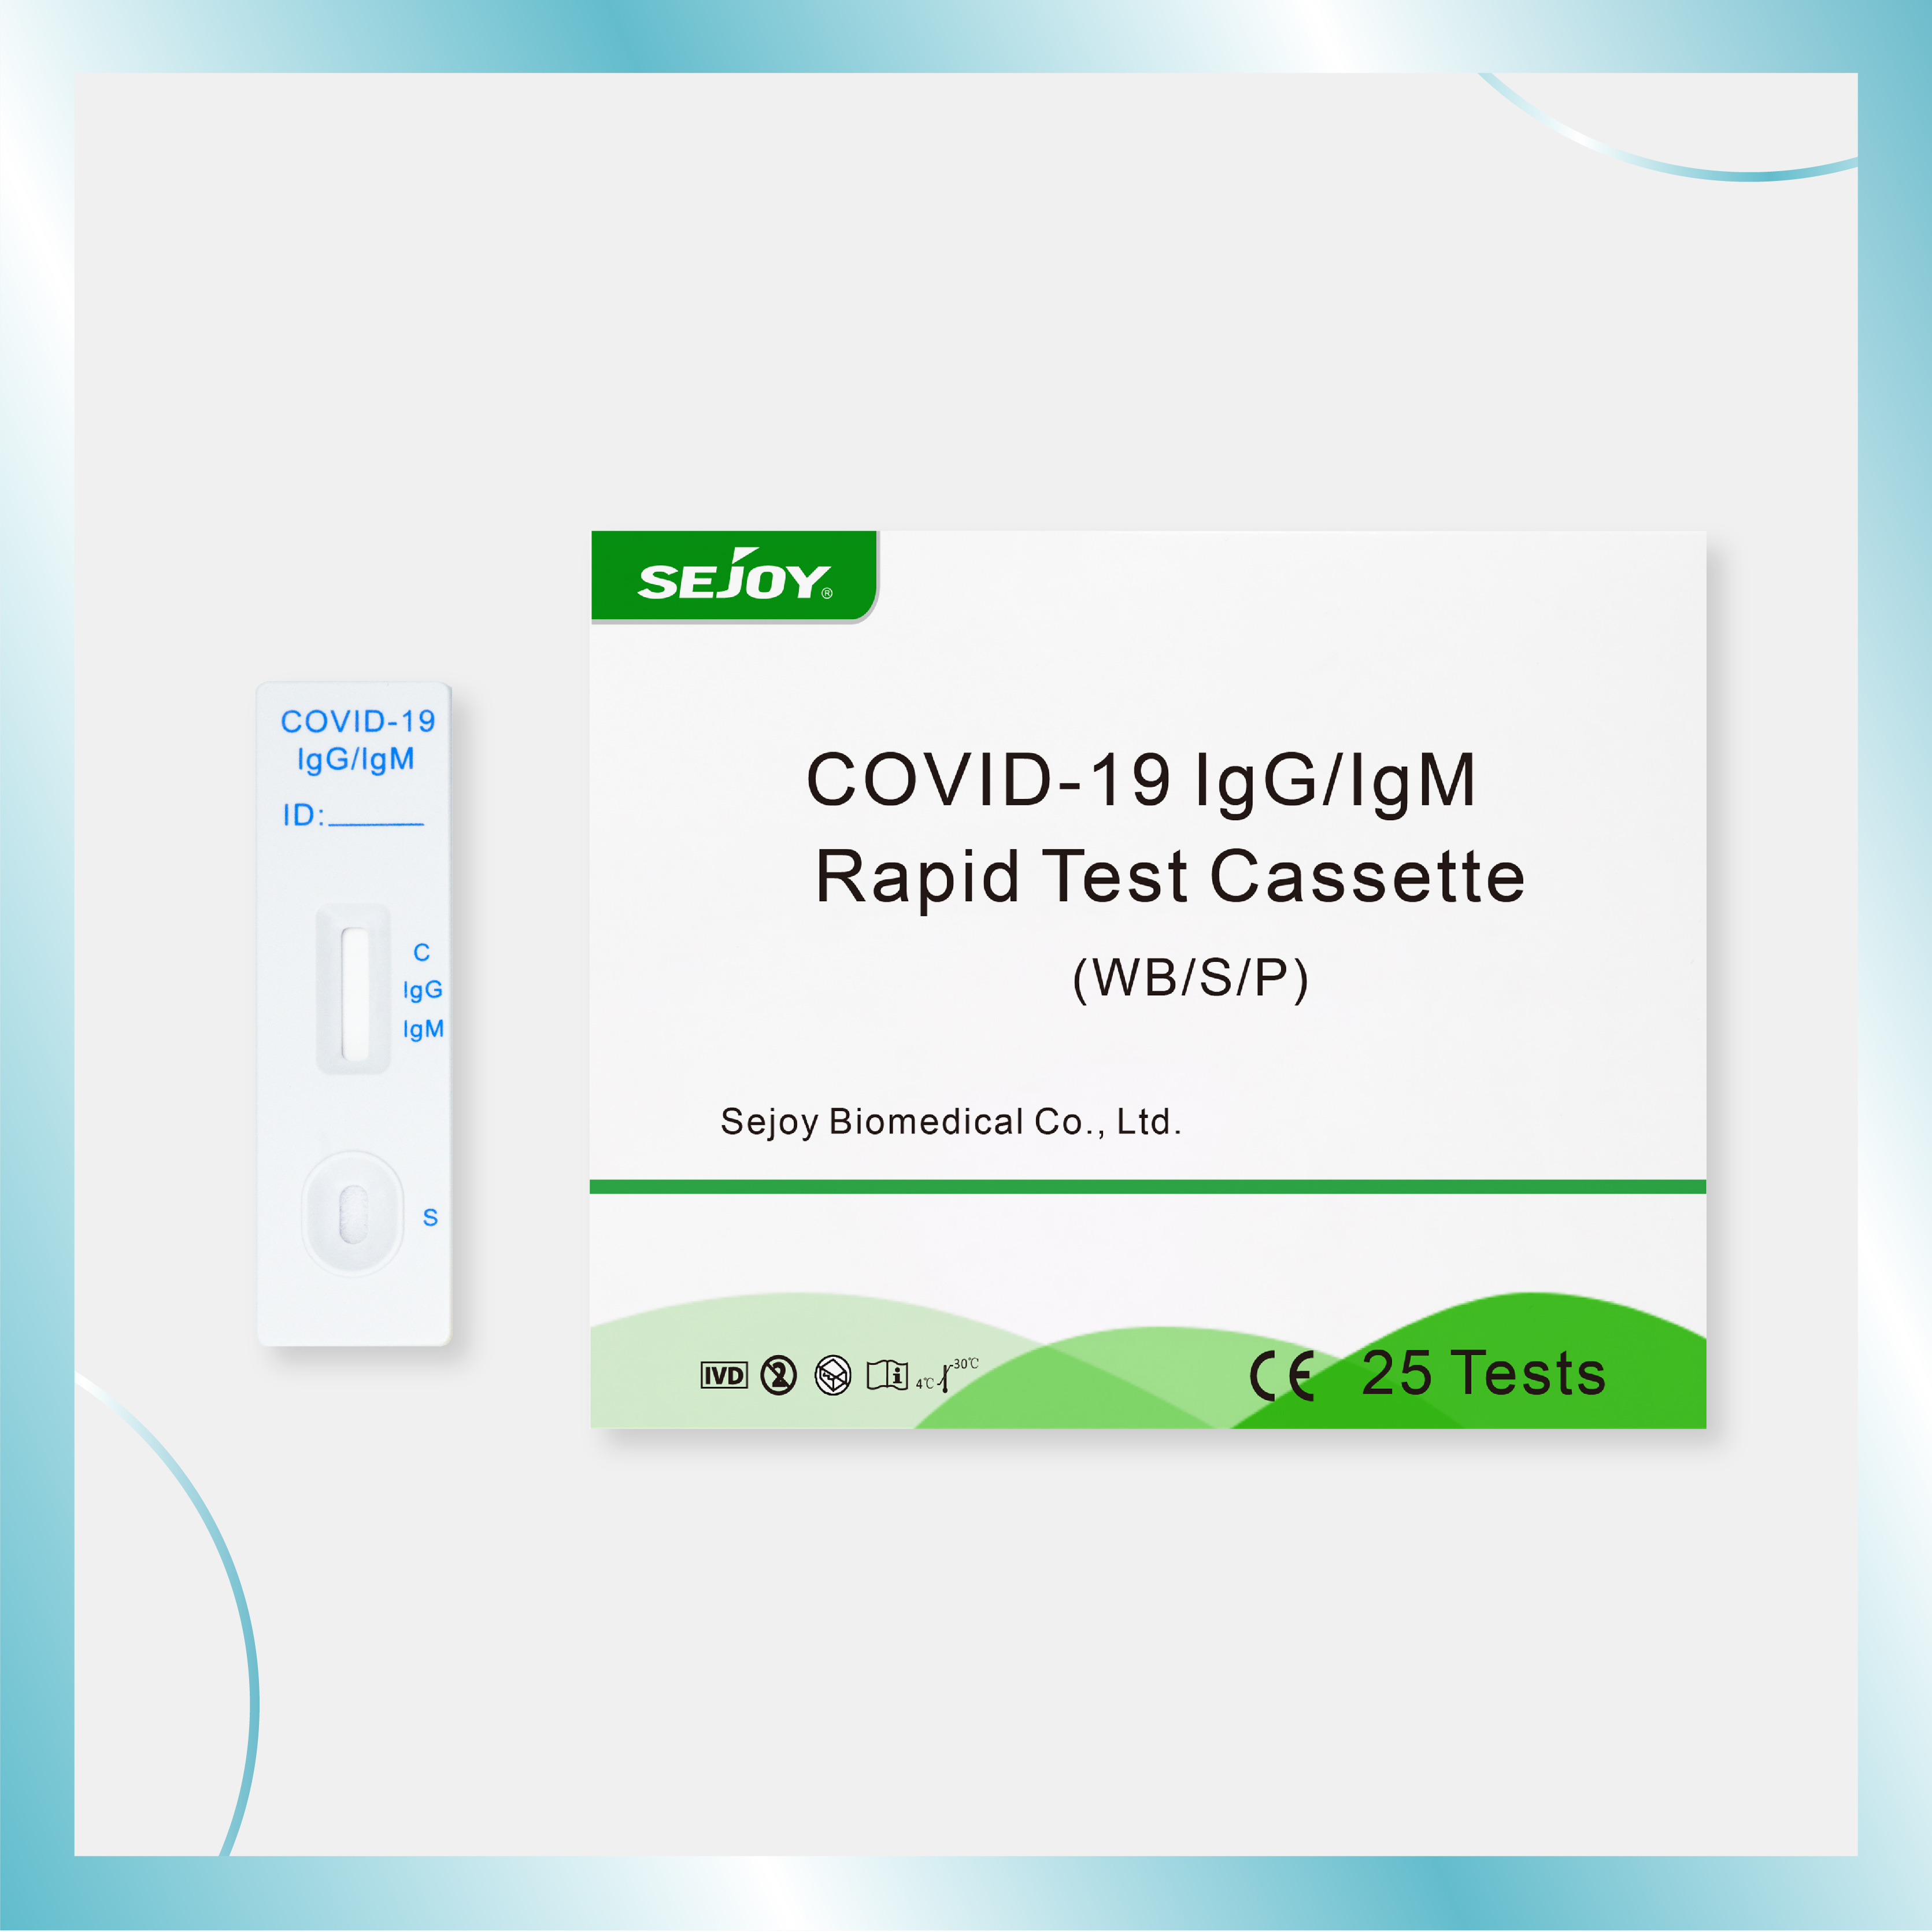 COVID-19 lgG/IgM र्‍यापिड टेस्ट क्यासेट